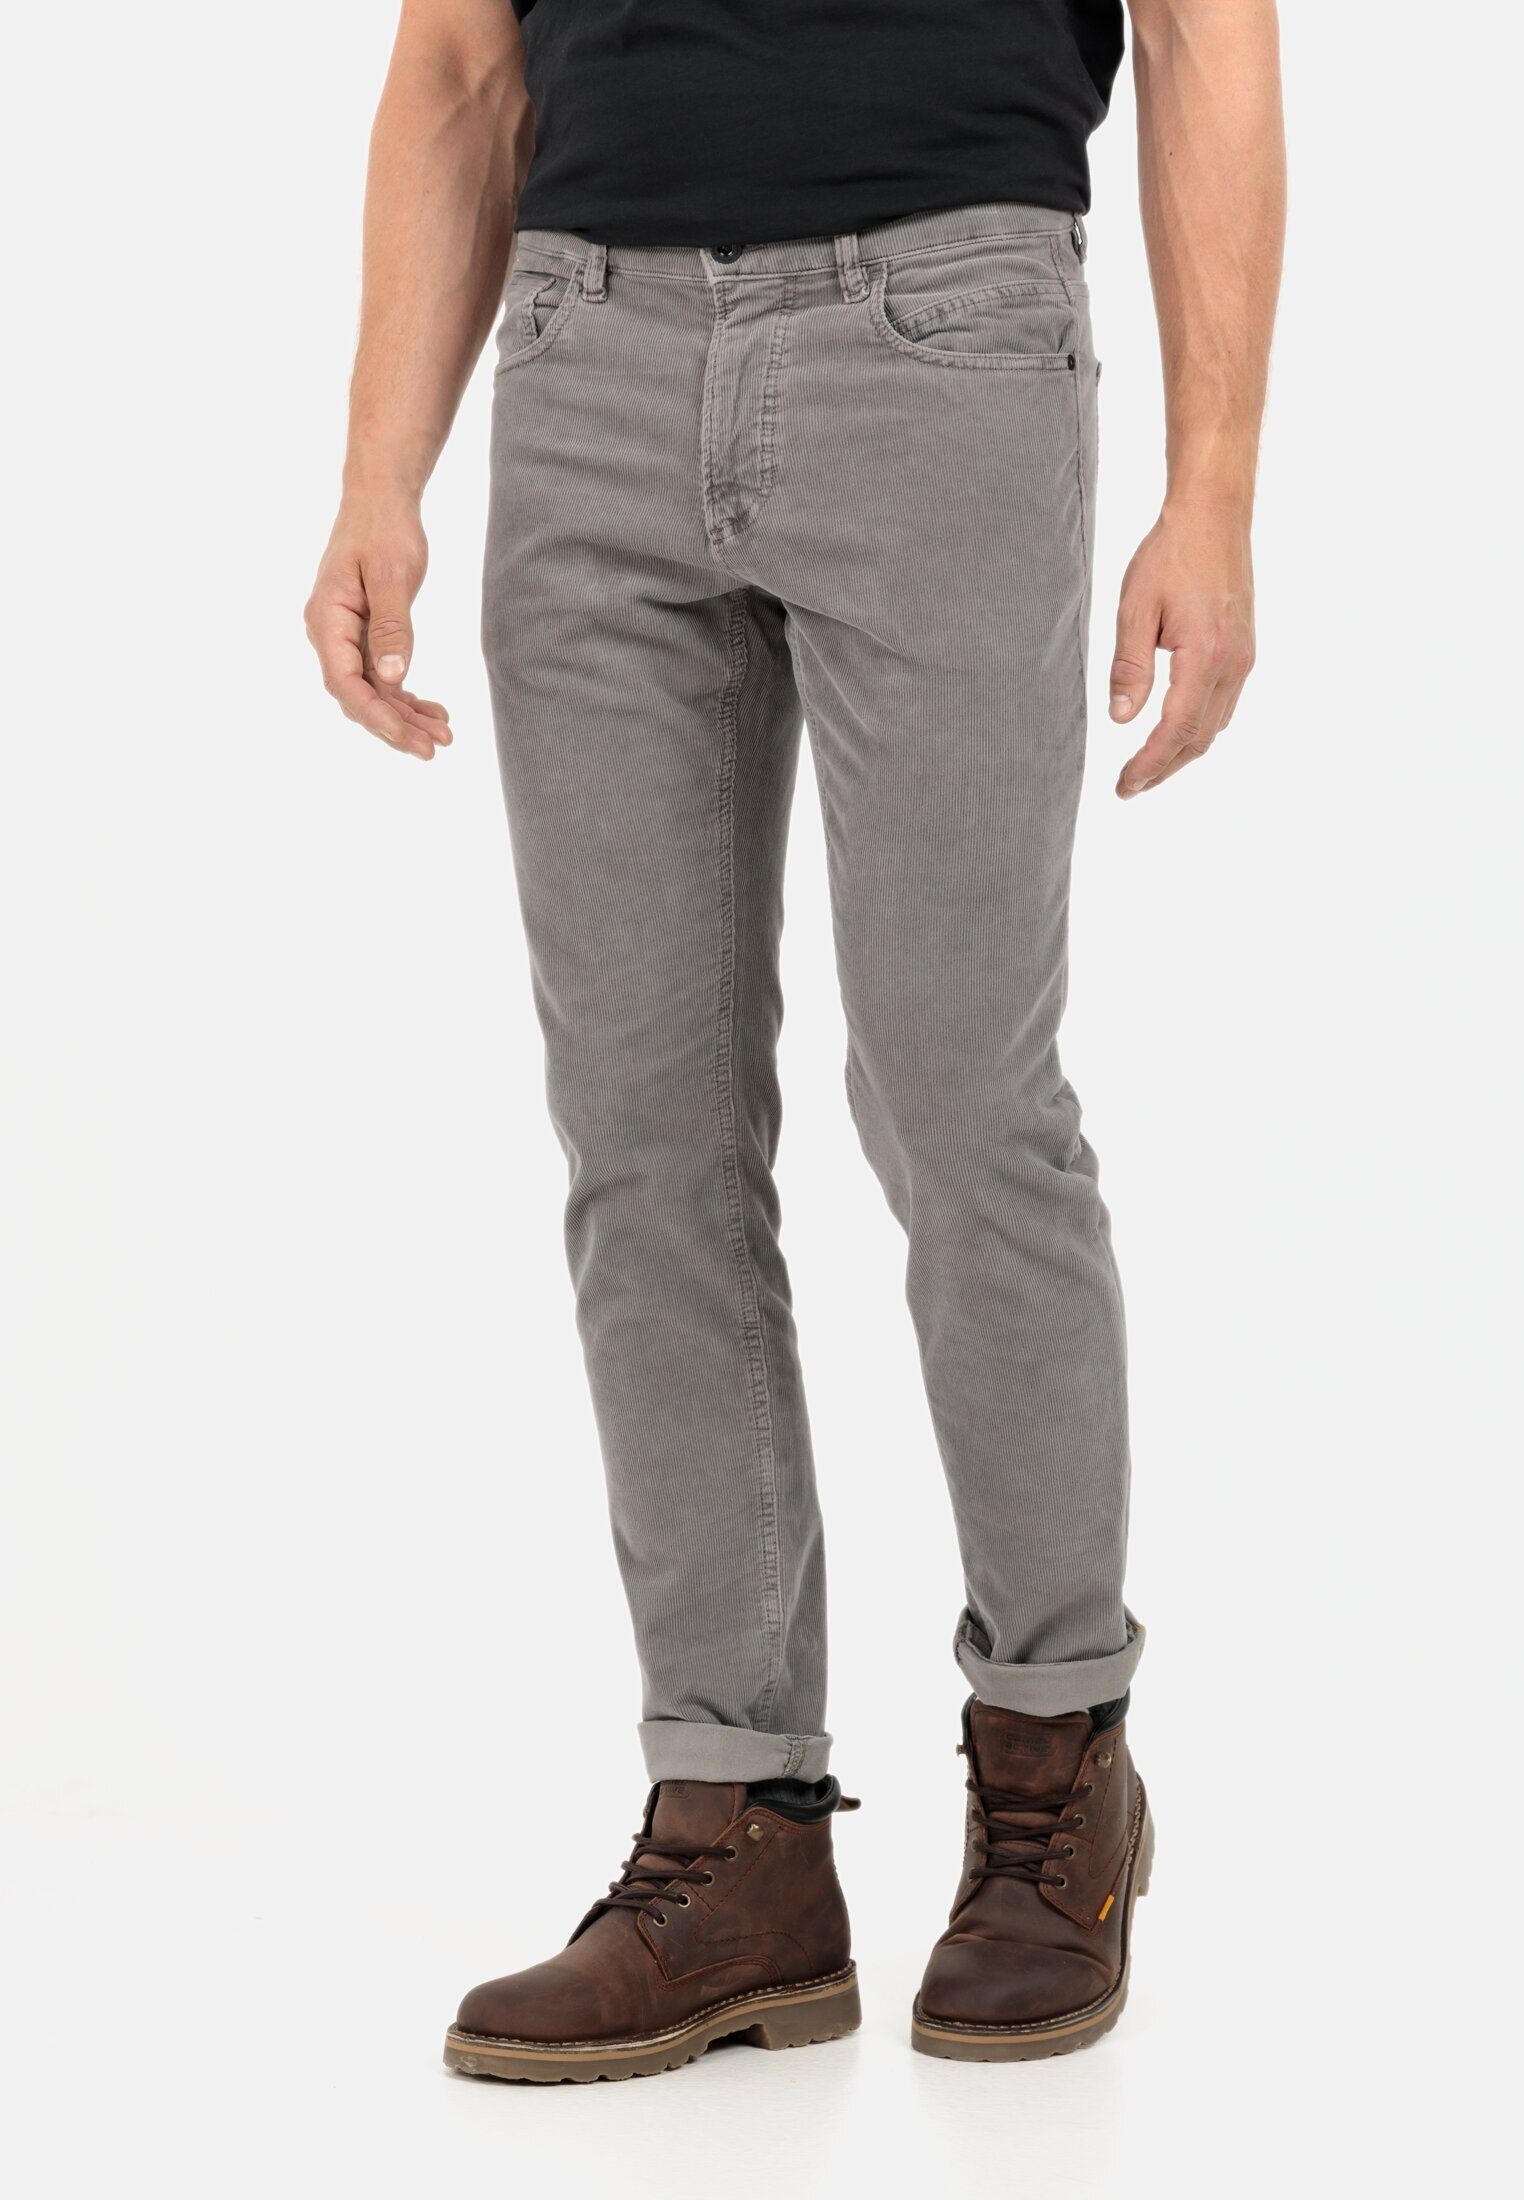 camel active 5-Pocket-Jeans 5-Pocket Cordhose Regular Fit Grau